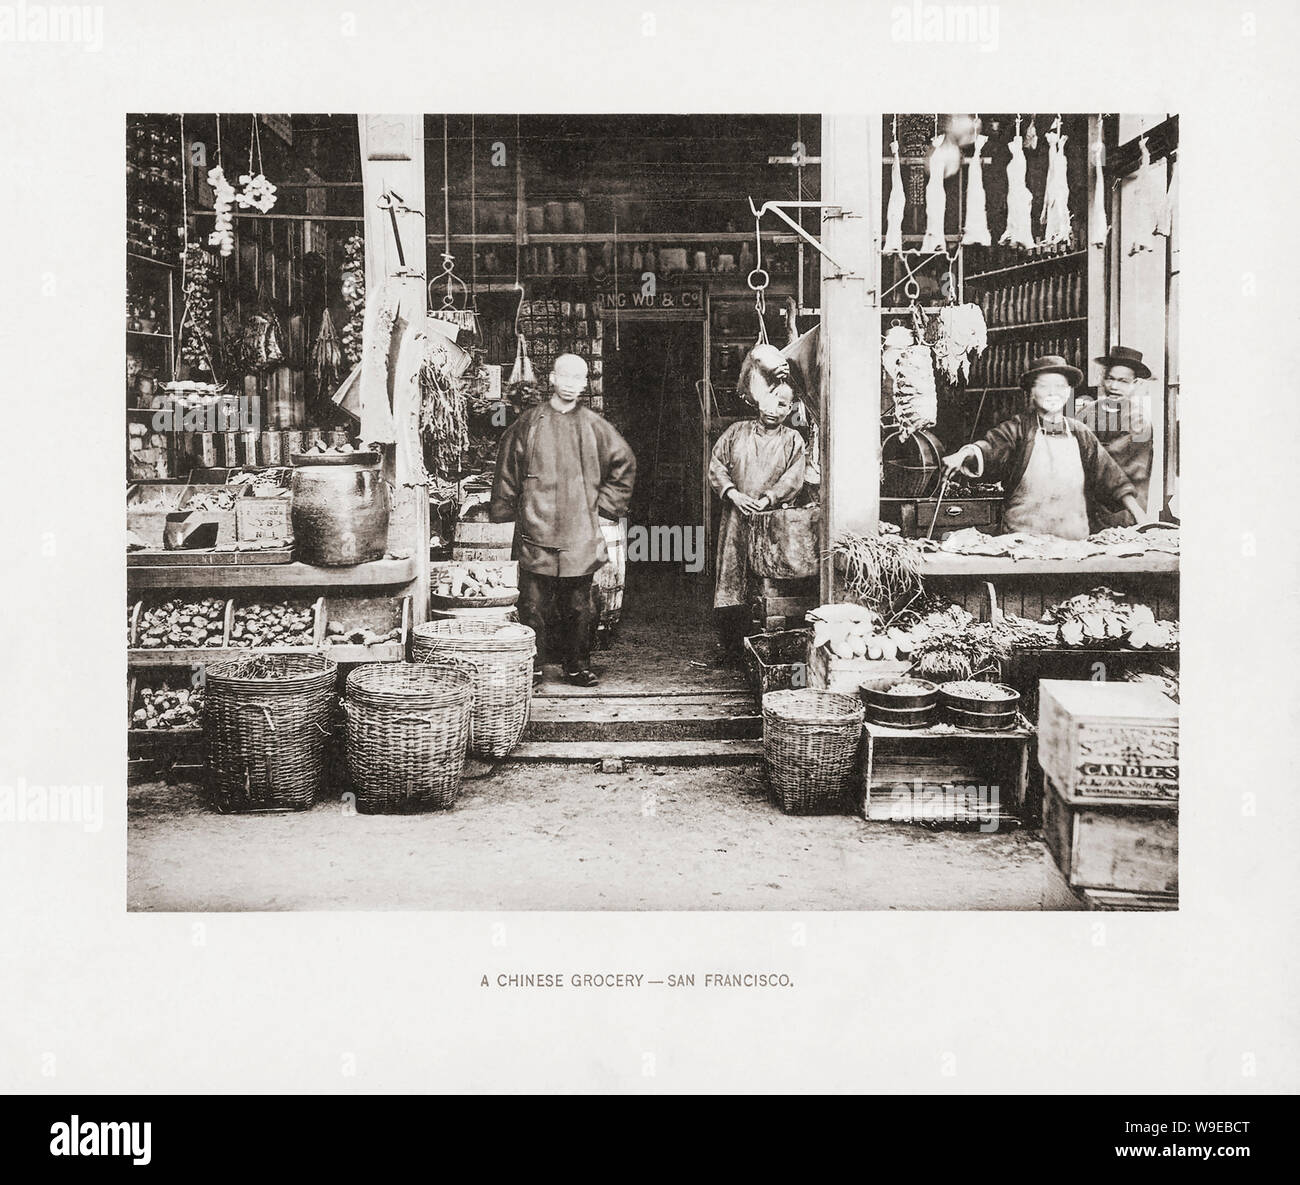 Ein chinesischer Lebensmittelladen in San Francisco, Kalifornien, USA, im späten 19. Jahrhundert. Aus dem Buch, die Vereinigten Staaten von Amerika - 100 Albertype Illustrationen aus den letzten negativen der Bekanntesten Szenen unseres Landes, veröffentlicht 1893. Stockfoto